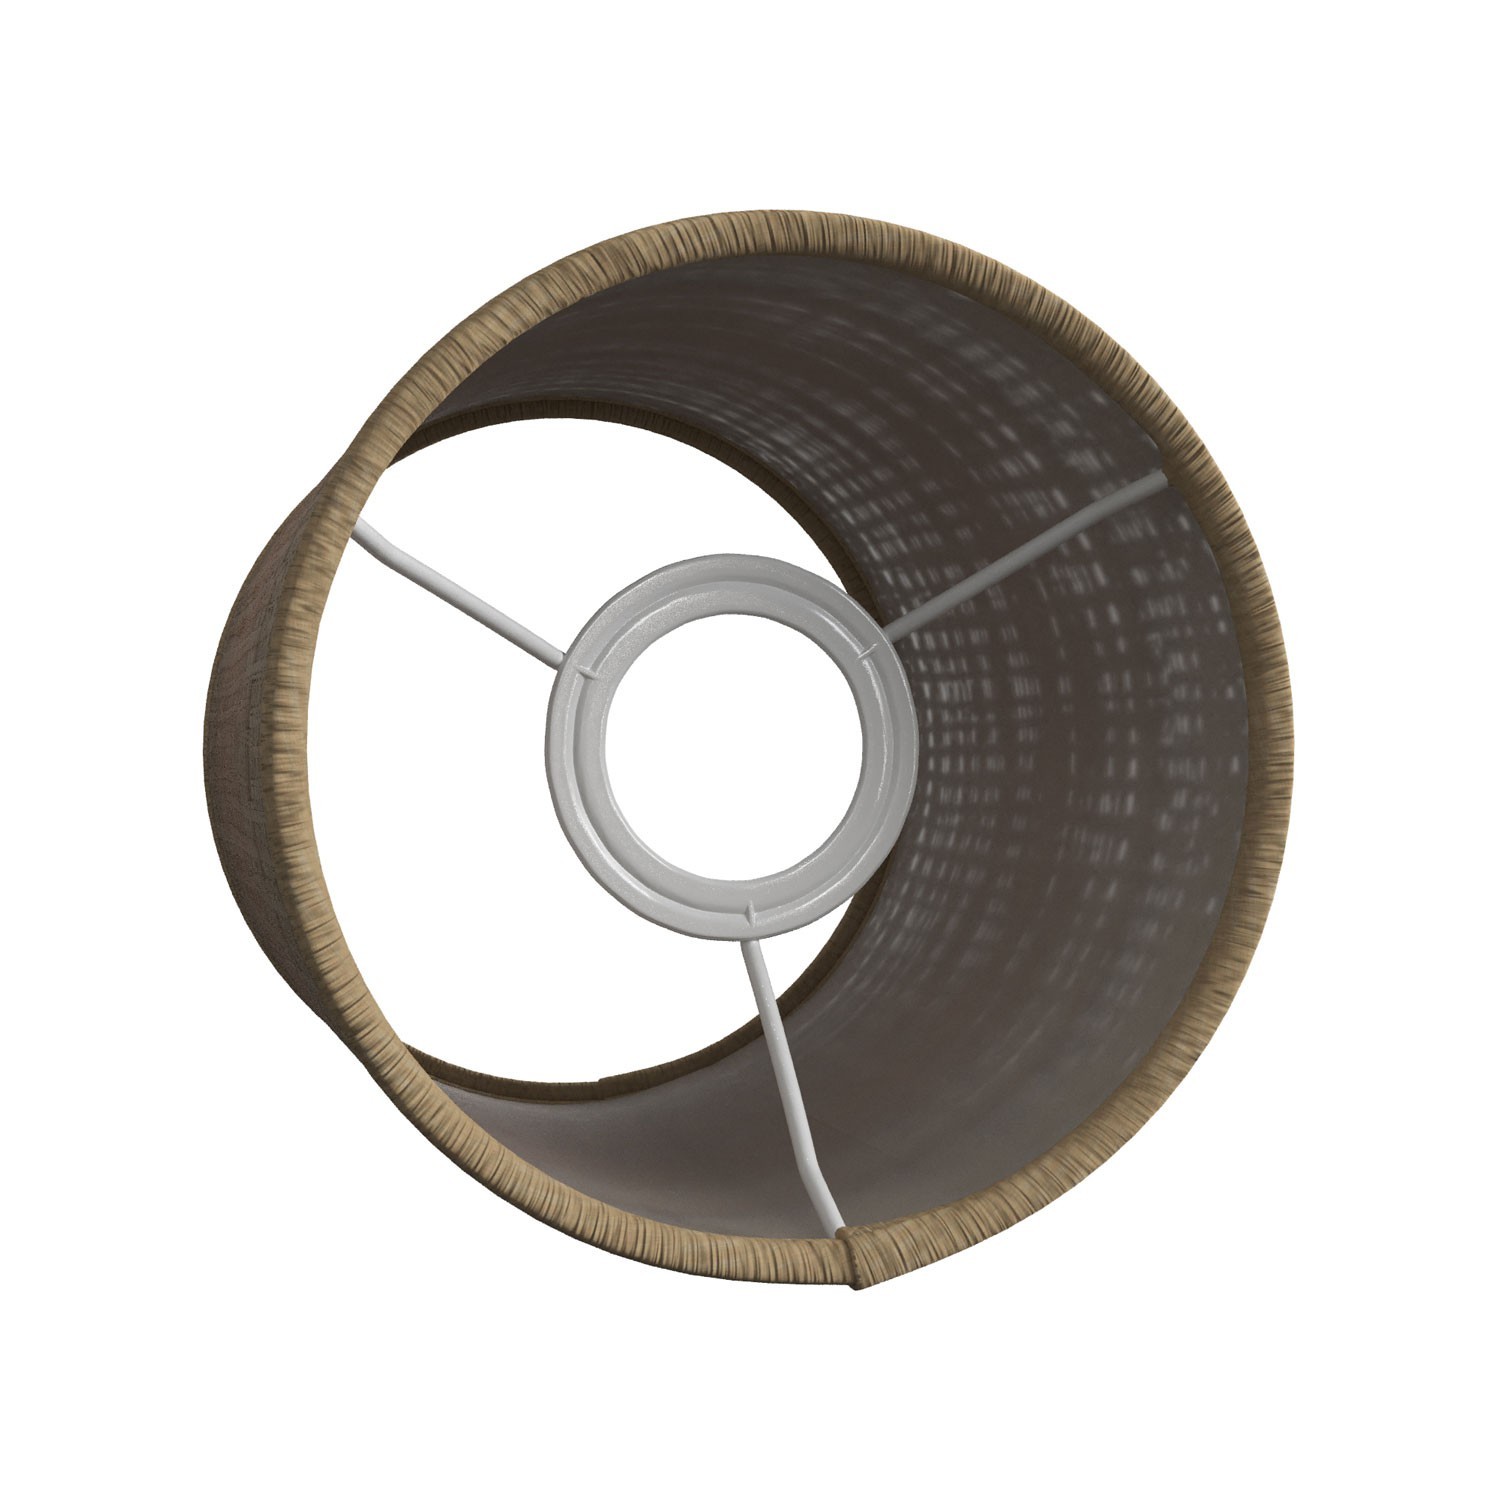 Pantalla Cilindro de tela para casquillo E27 - 100% Made in Italy